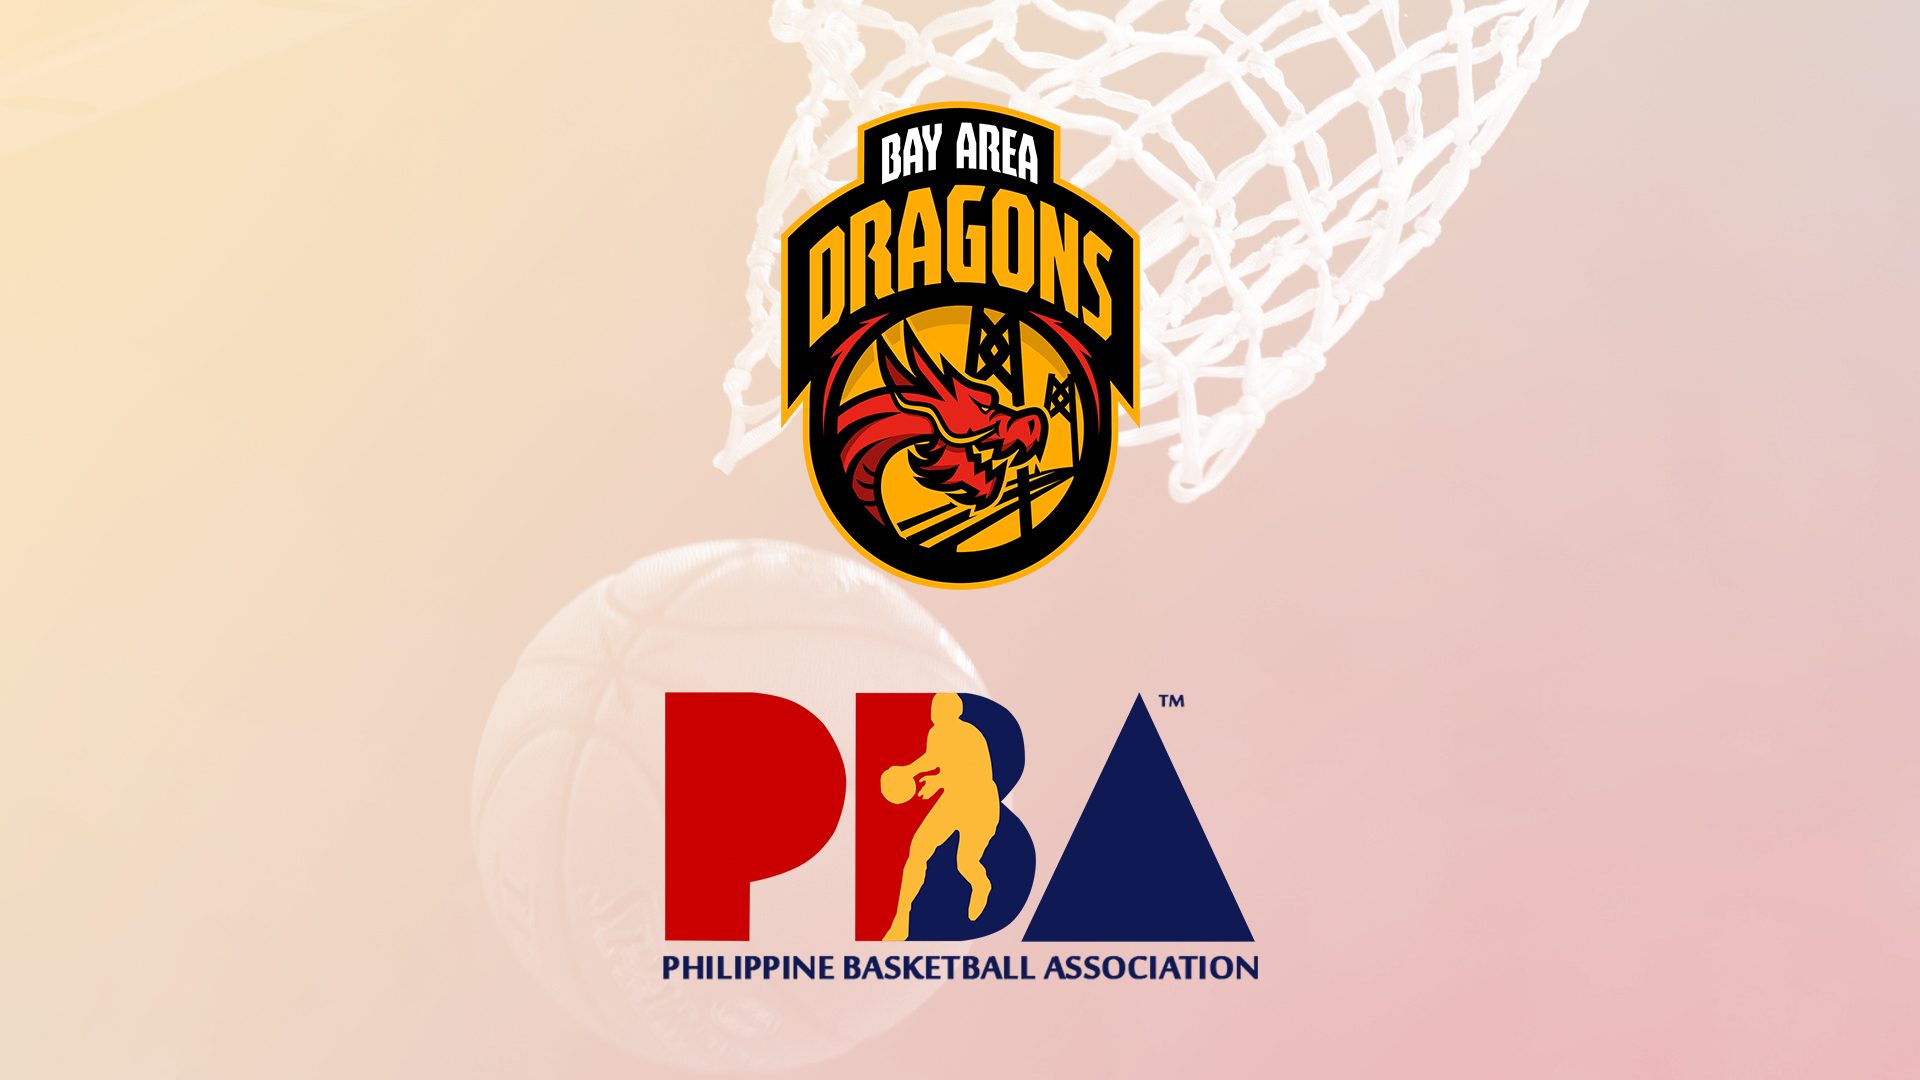 PBA opens door to Bay Area Dragons as guest team